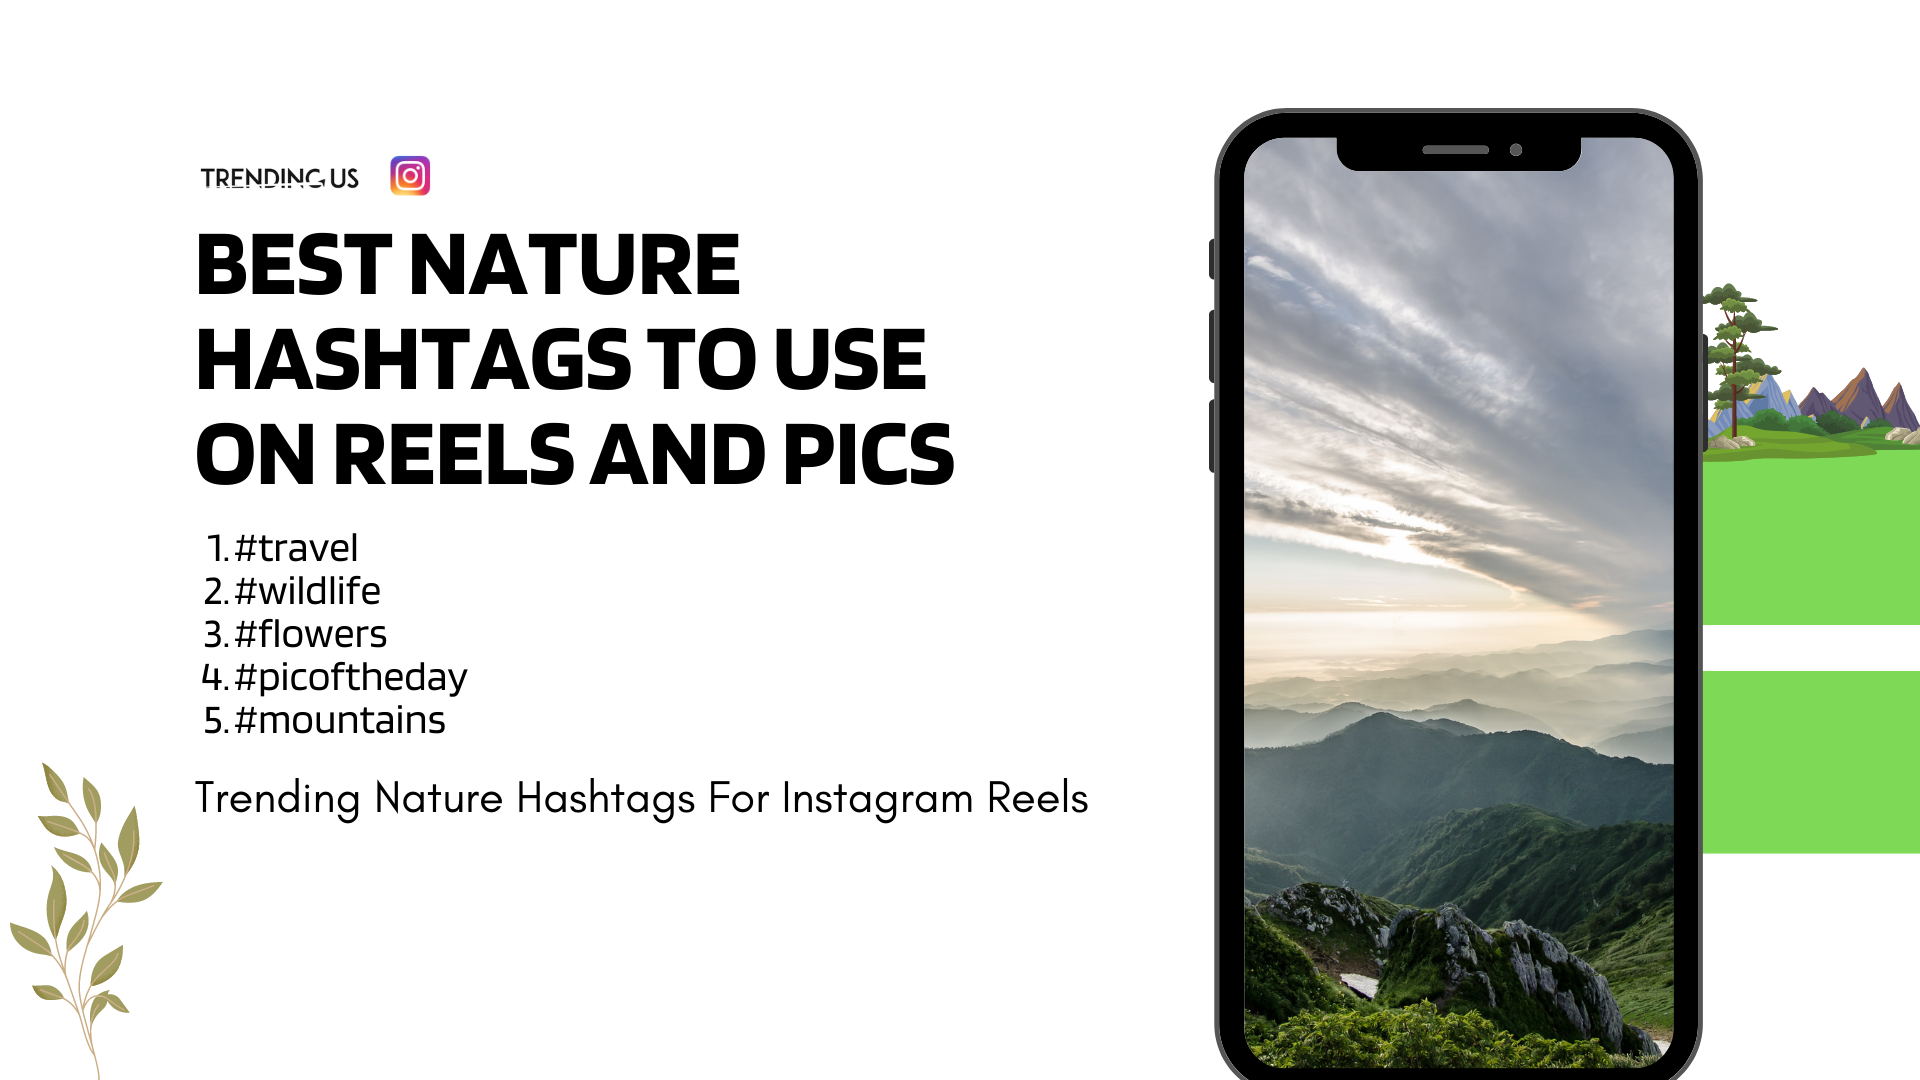 75 Trending Nature Hashtags For Instagram Reels » Trending Us